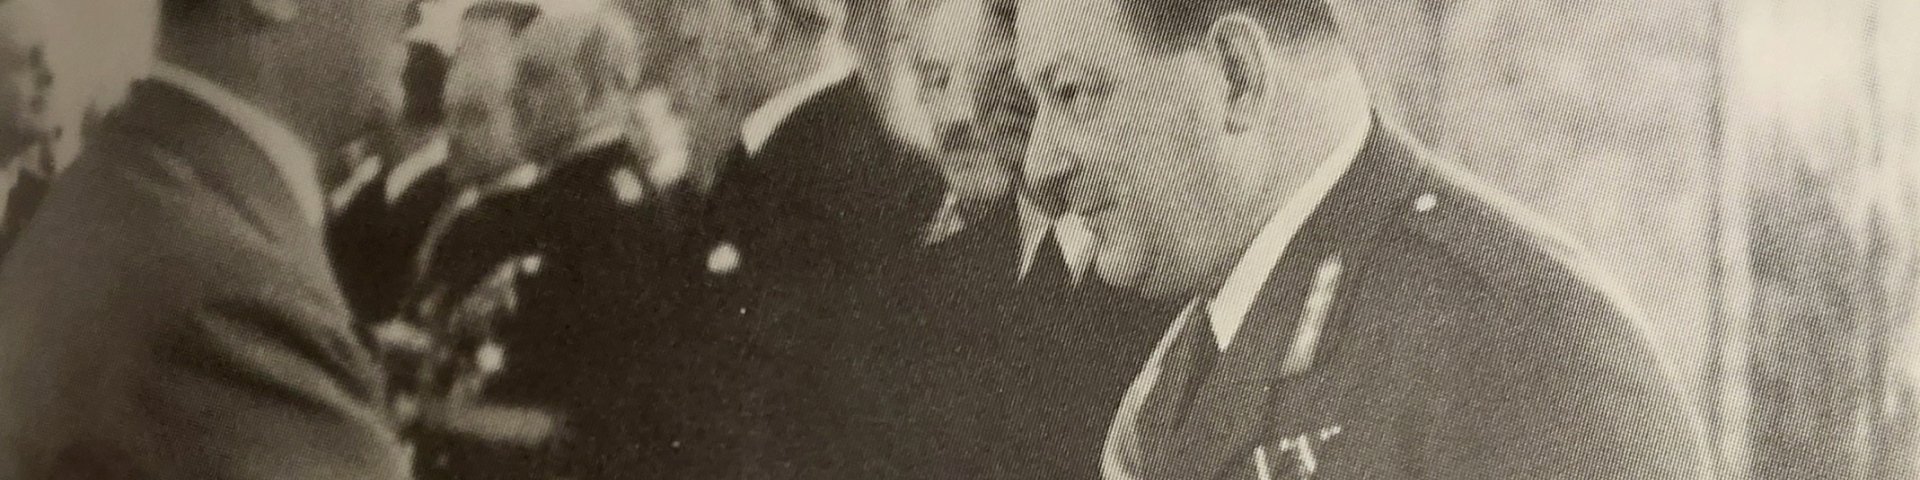 “Kindralstaabi ülem kindral Nikolai Reek Adolf Hitleri juubelil 20. aprillil 1939, mida tähistati Saksamaal riikliku pühana.“ Allikas: Wikiedia Commons